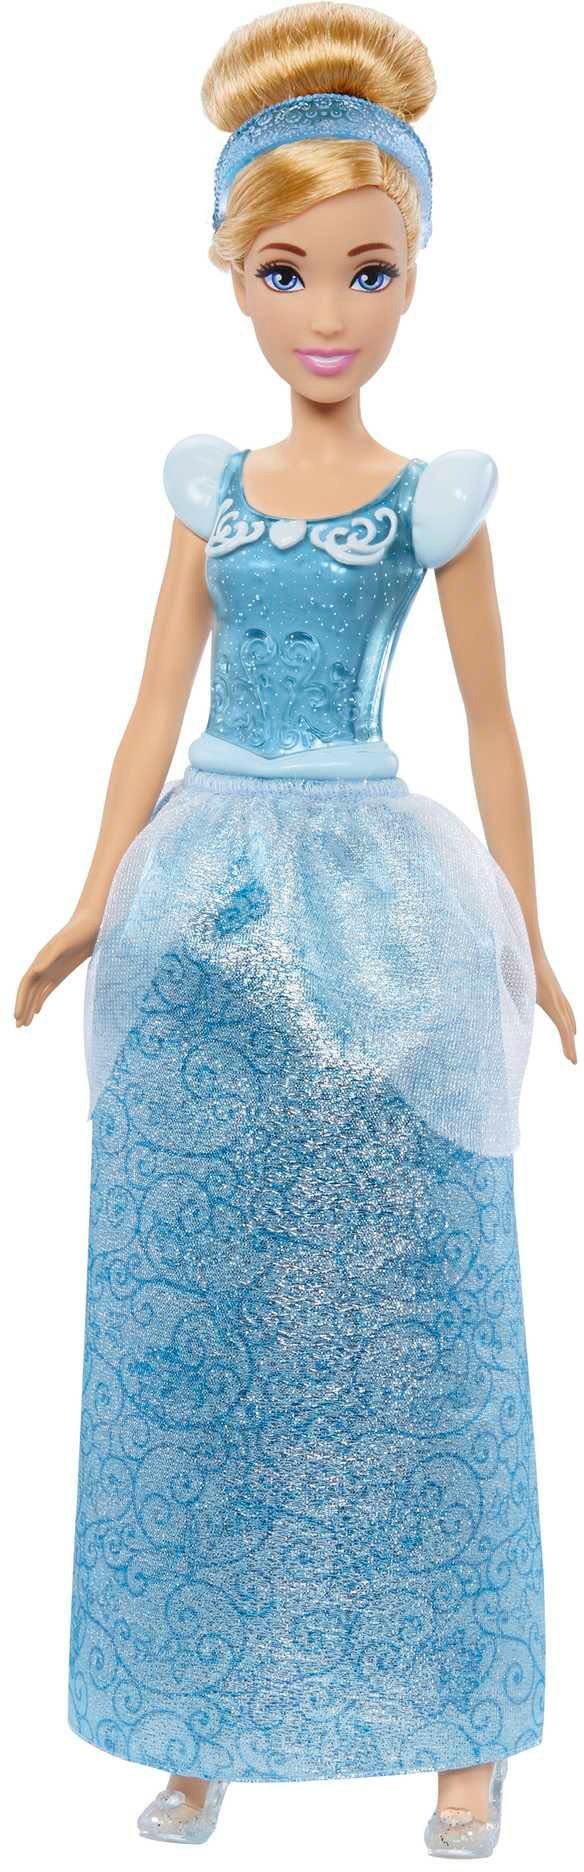 Mattel® Princess Modepuppe Anziehpuppe Cinderella« »Disney Princess Cinderella, Disney Modepuppe Anziehpuppe